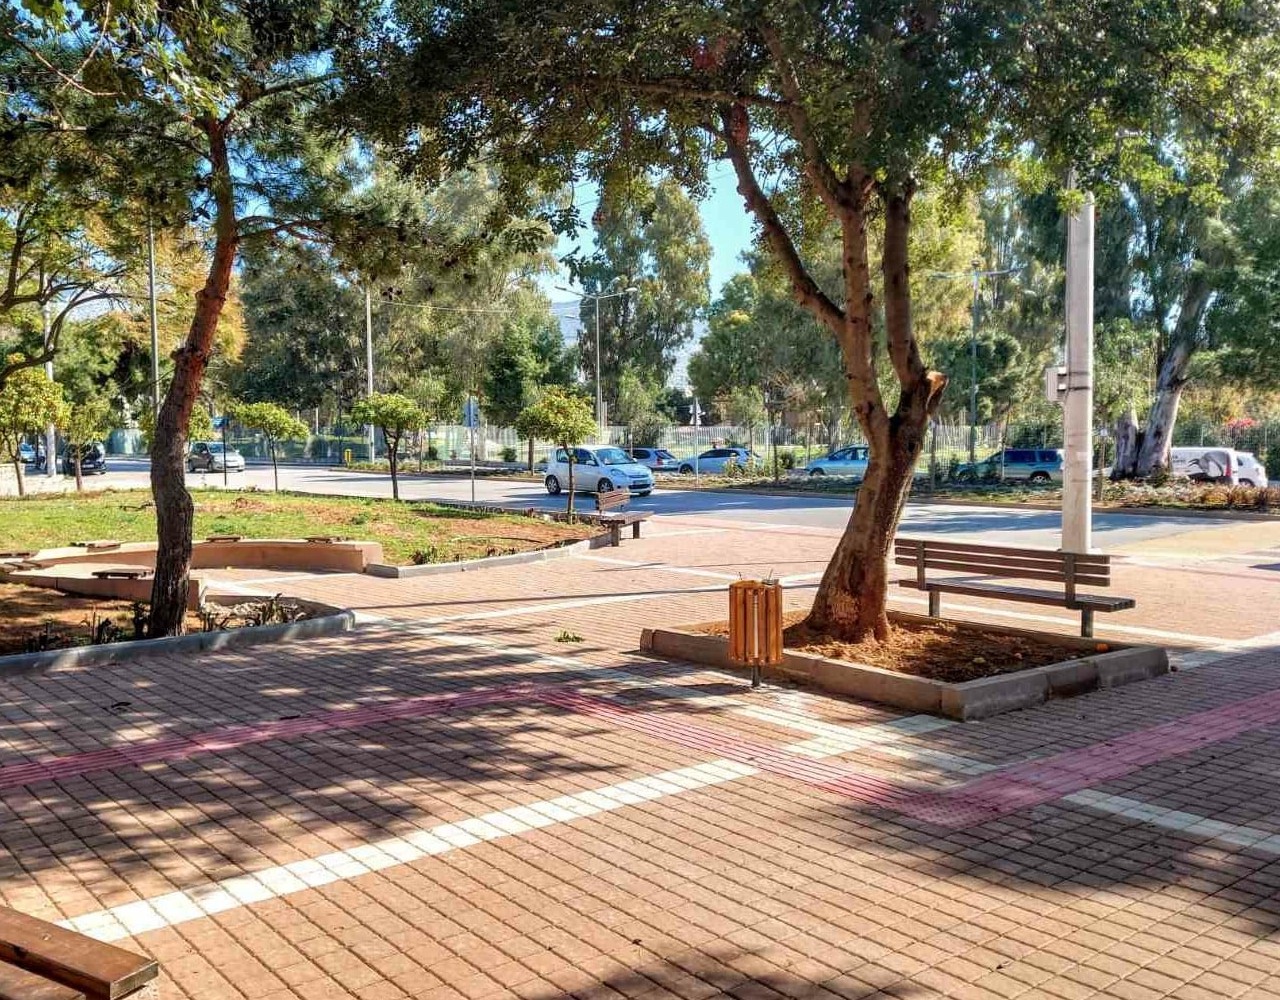 Δήμος Γλυφάδας: Έτοιμη η νέα μικρή πλατεία στο κέντρο της πόλης [ΕΙΚΟΝΕΣ]